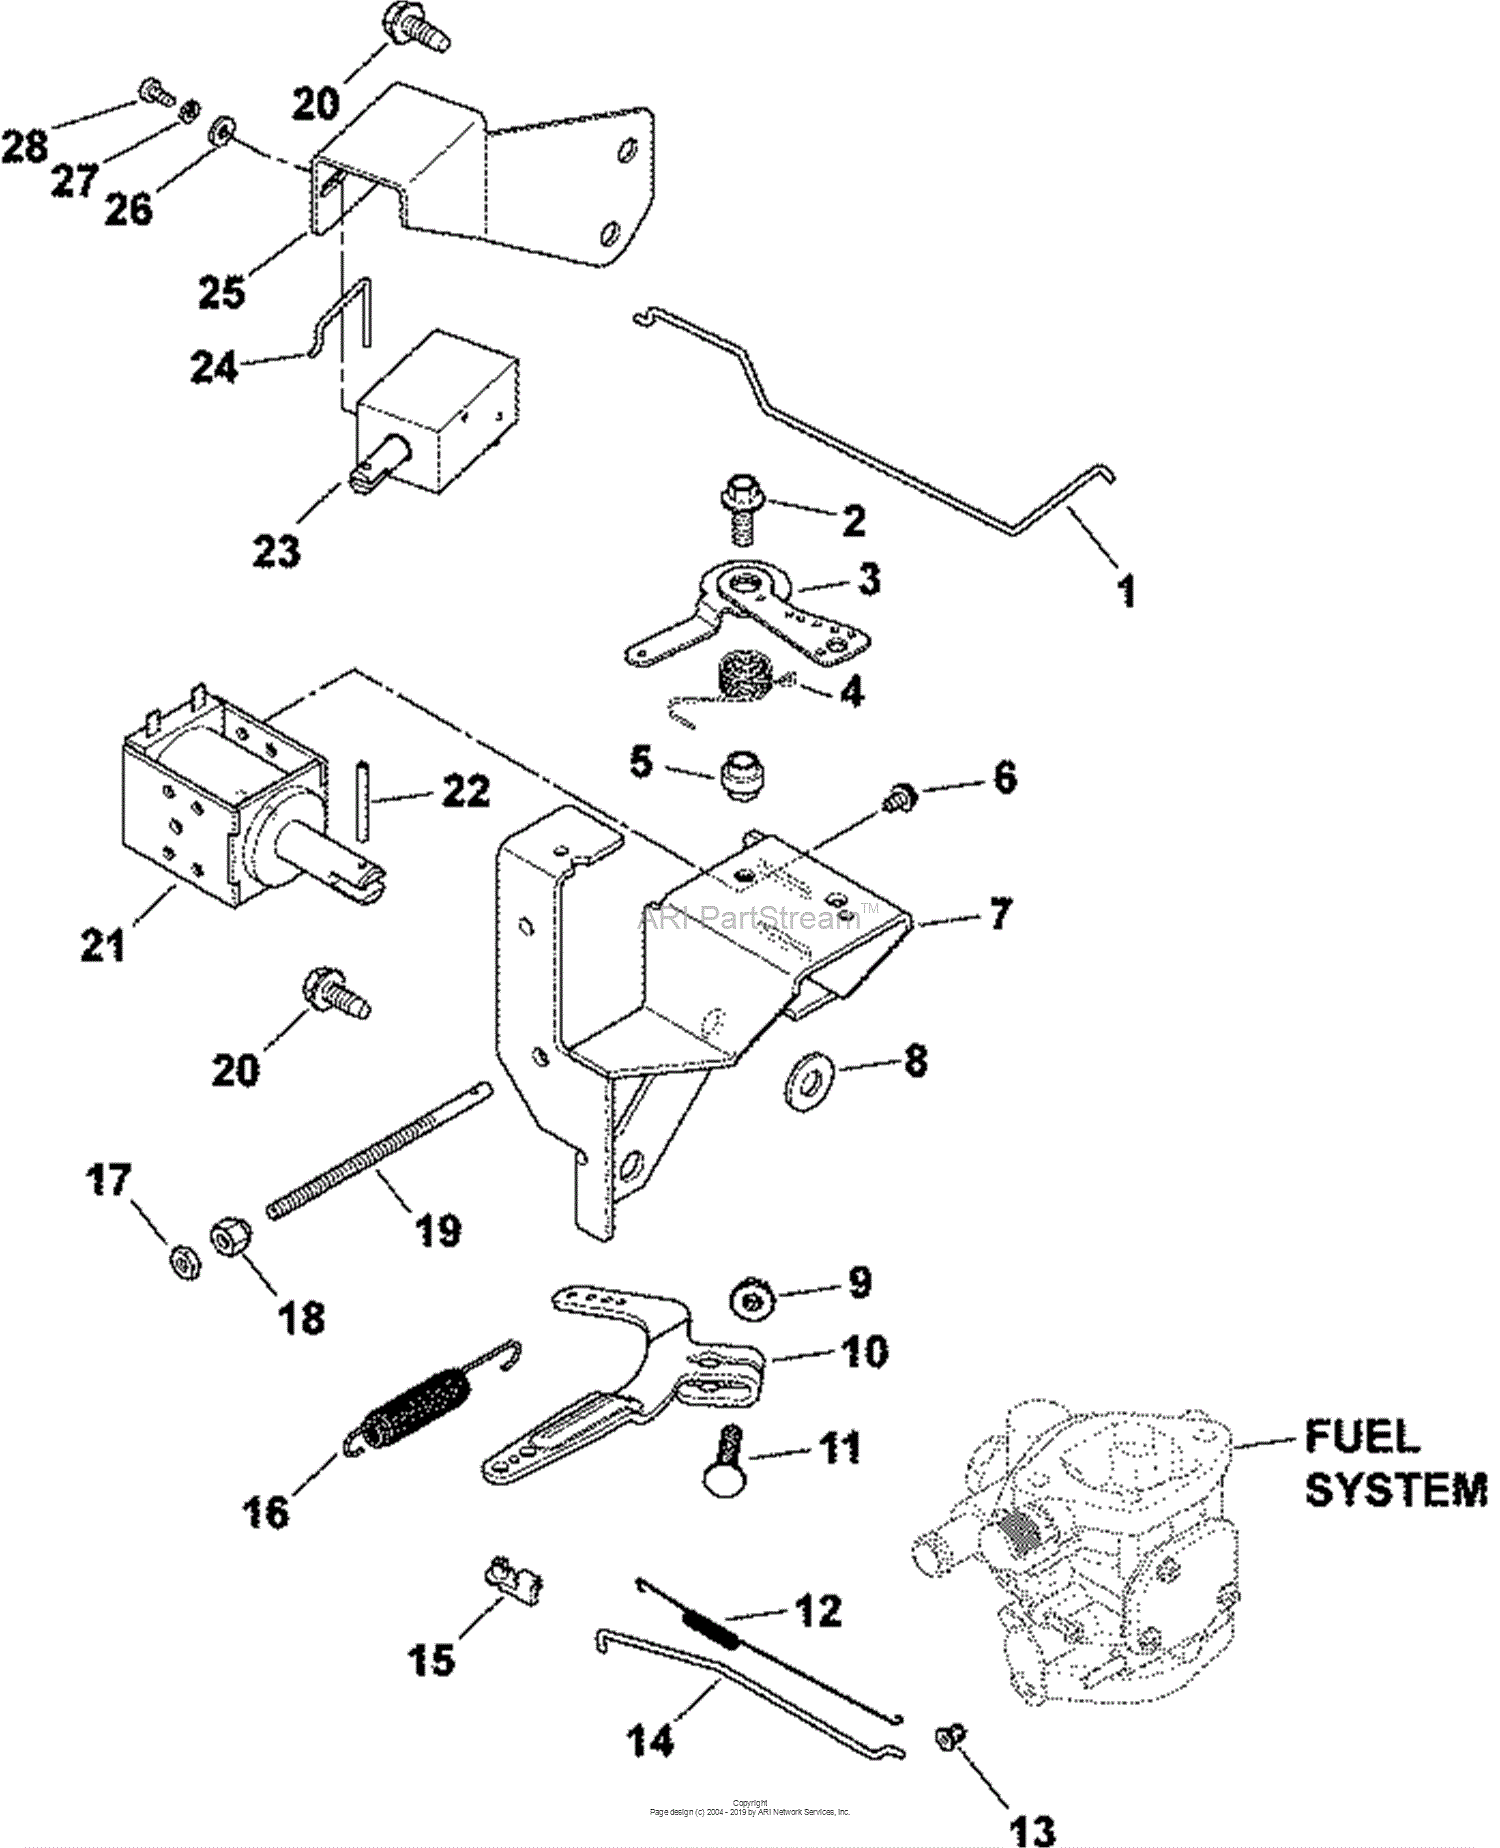 Kohler 26 Hp Engine Diagram